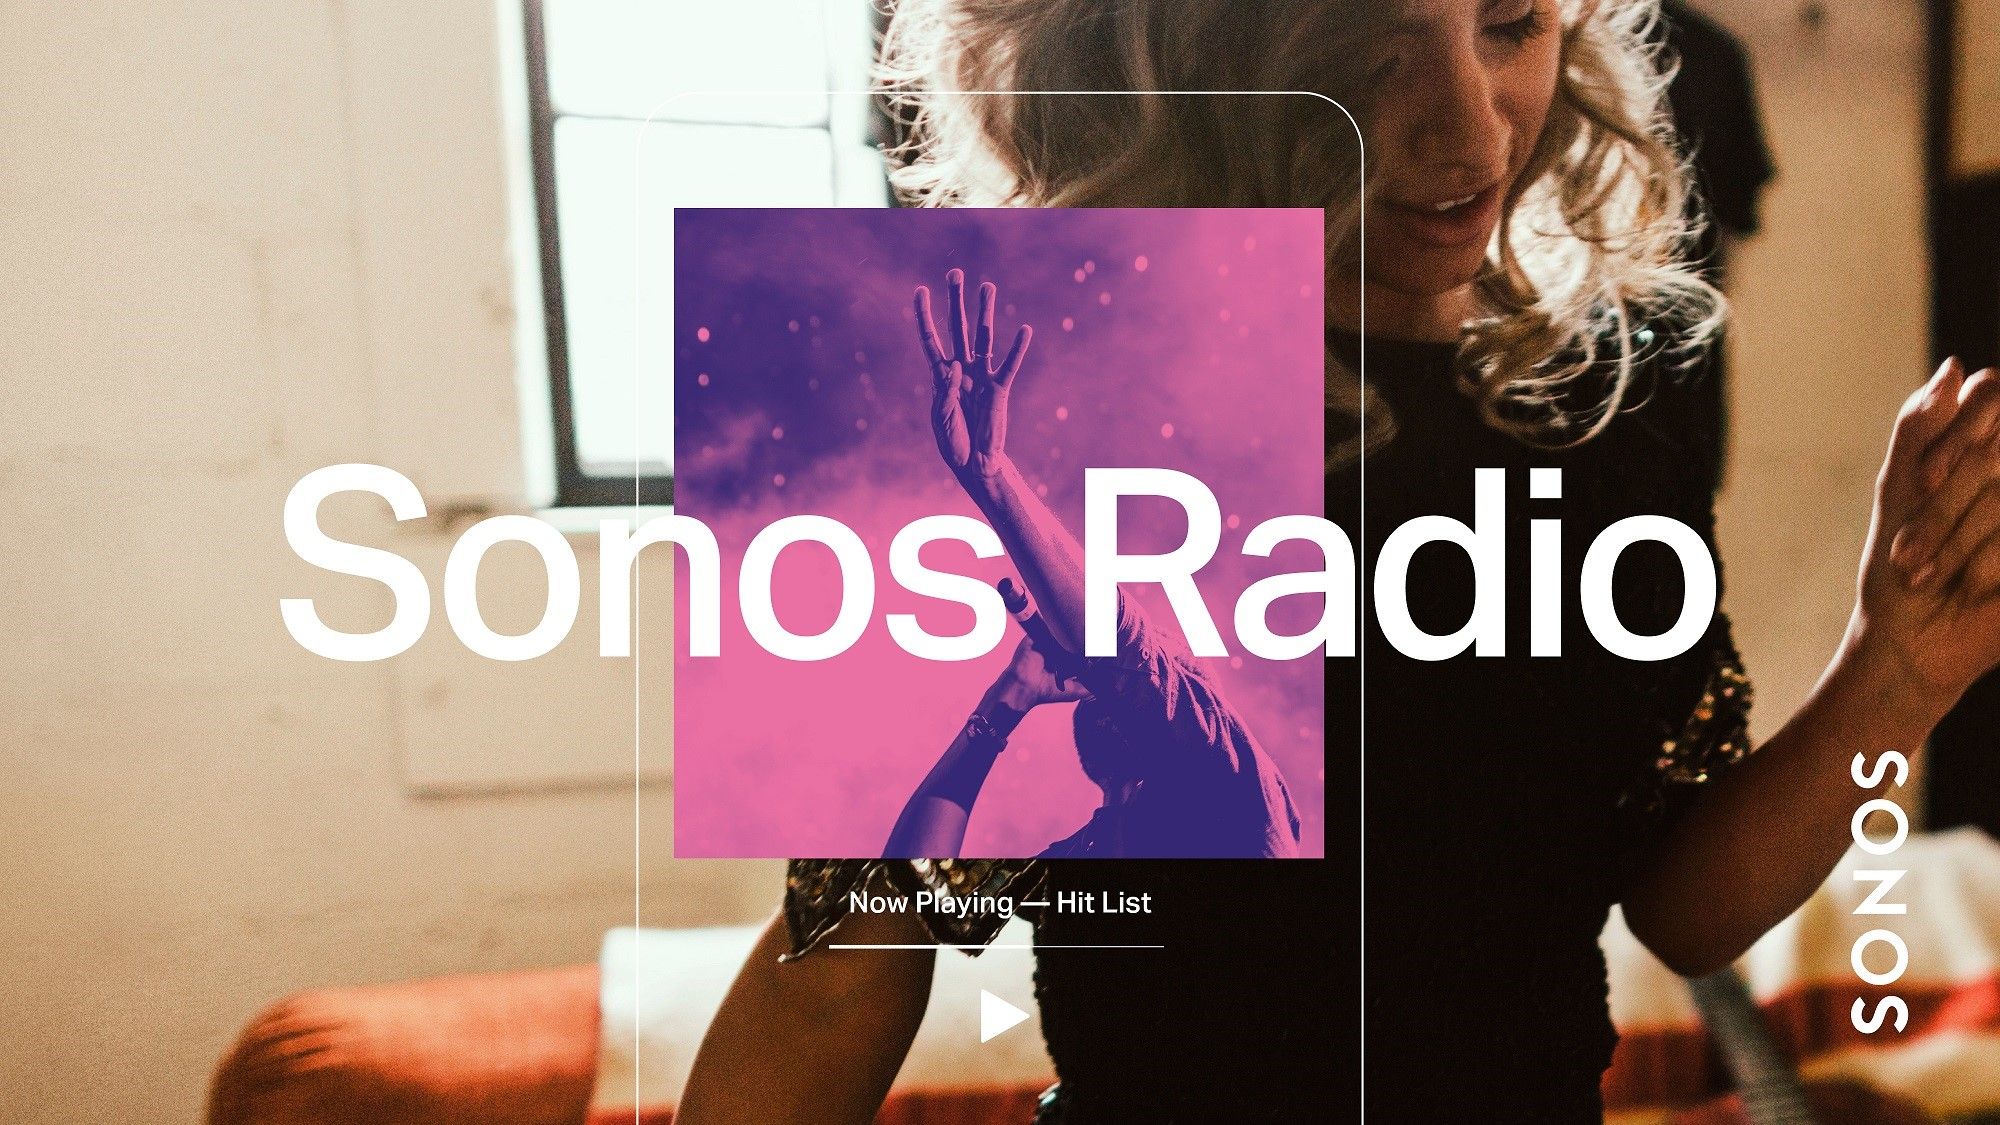 Sonos lanciert kostenlosen Radio Streaming Service Sonos Radio